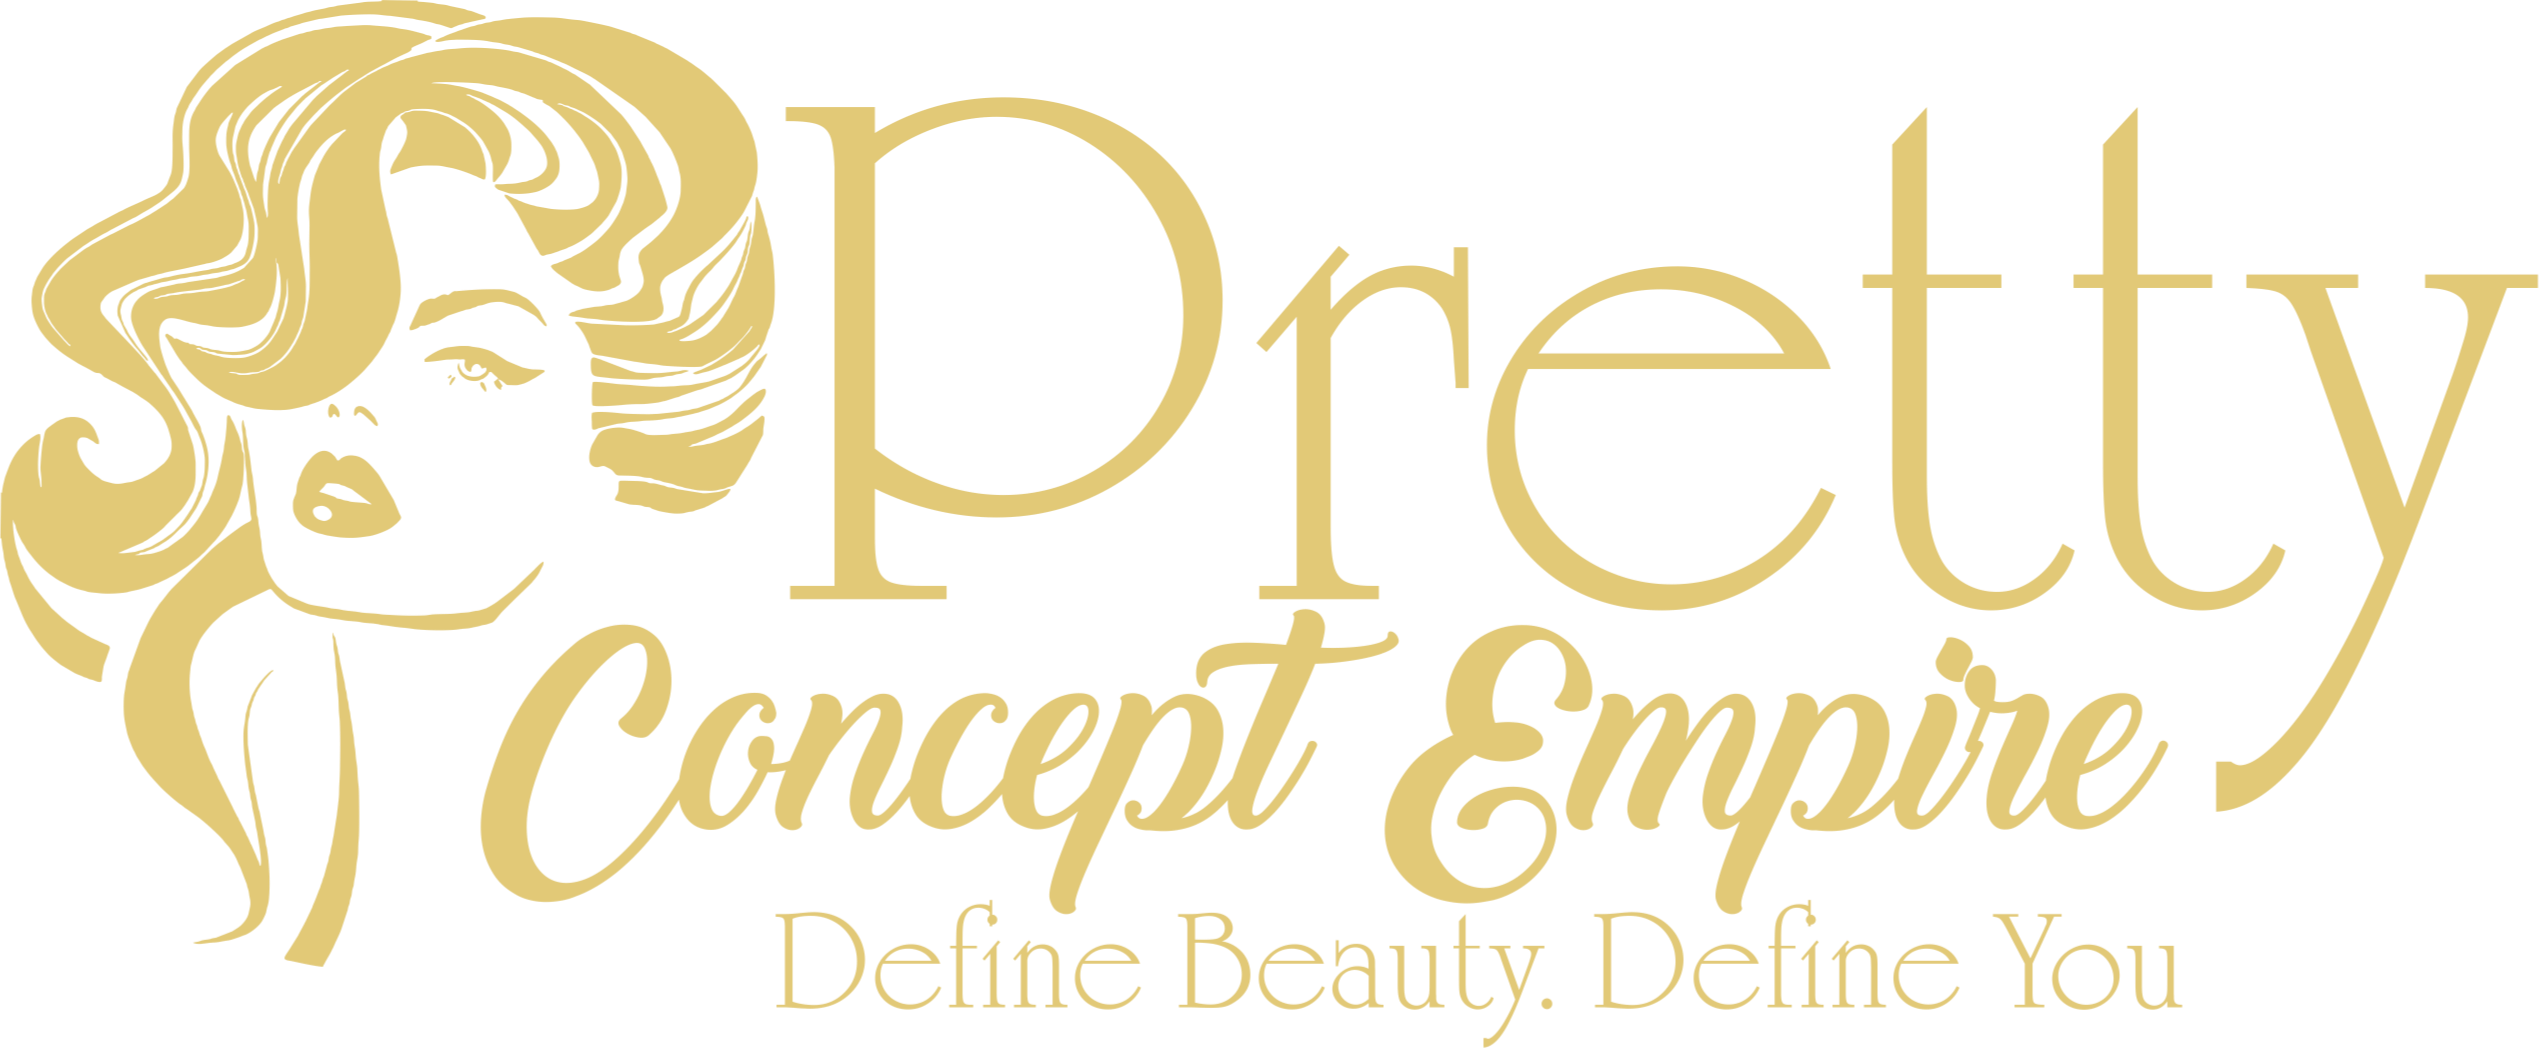 Web Design - Pretty Concept Empire Logo